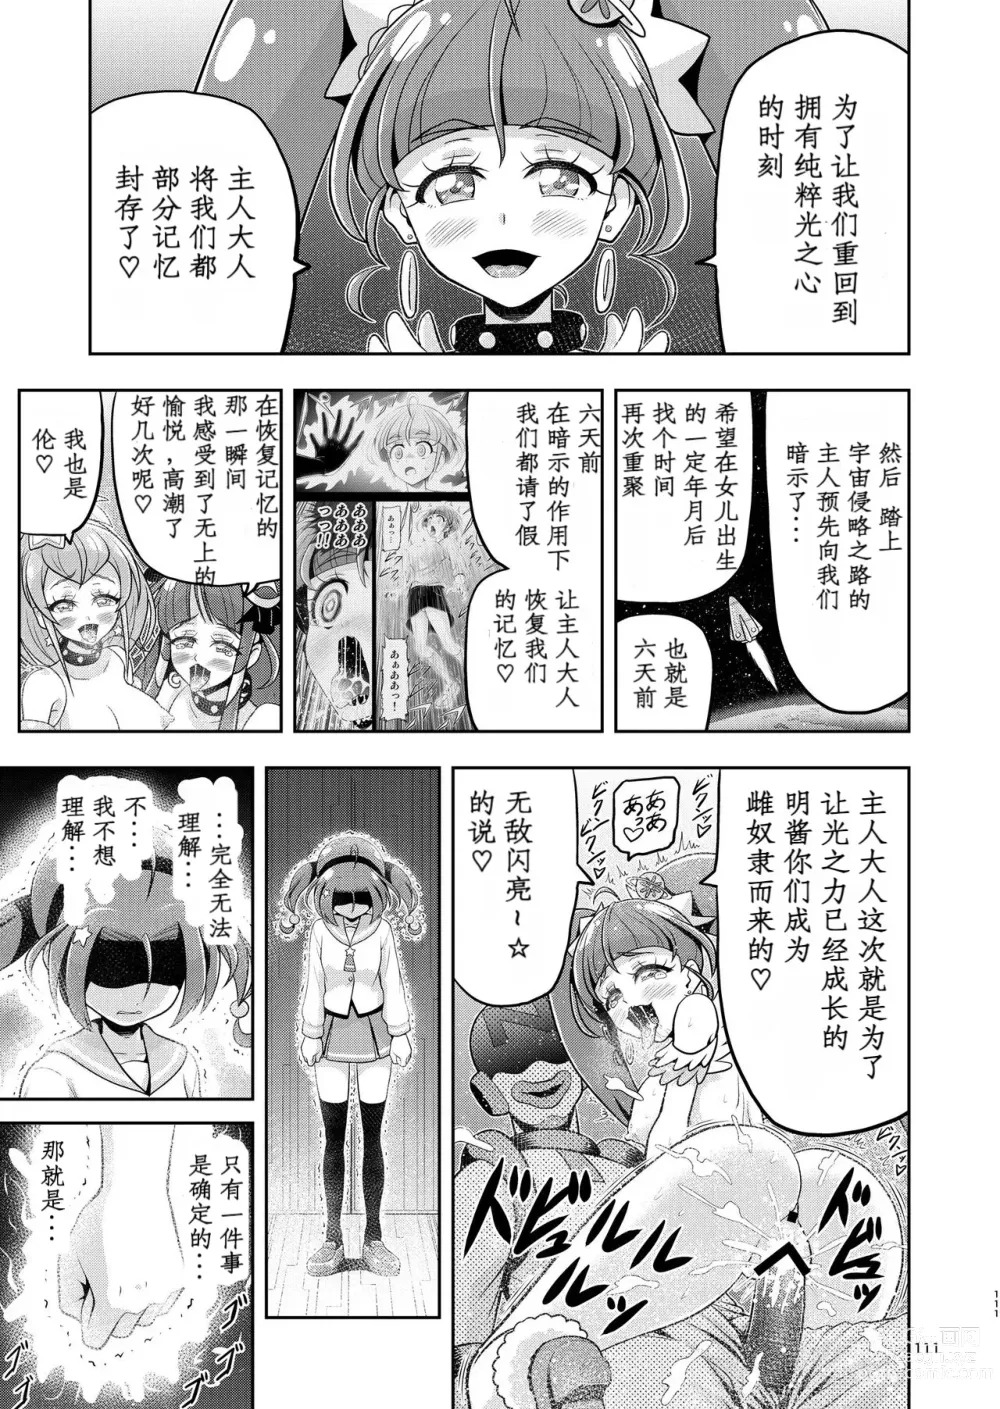 Page 60 of doujinshi Hoshi Asobi 2